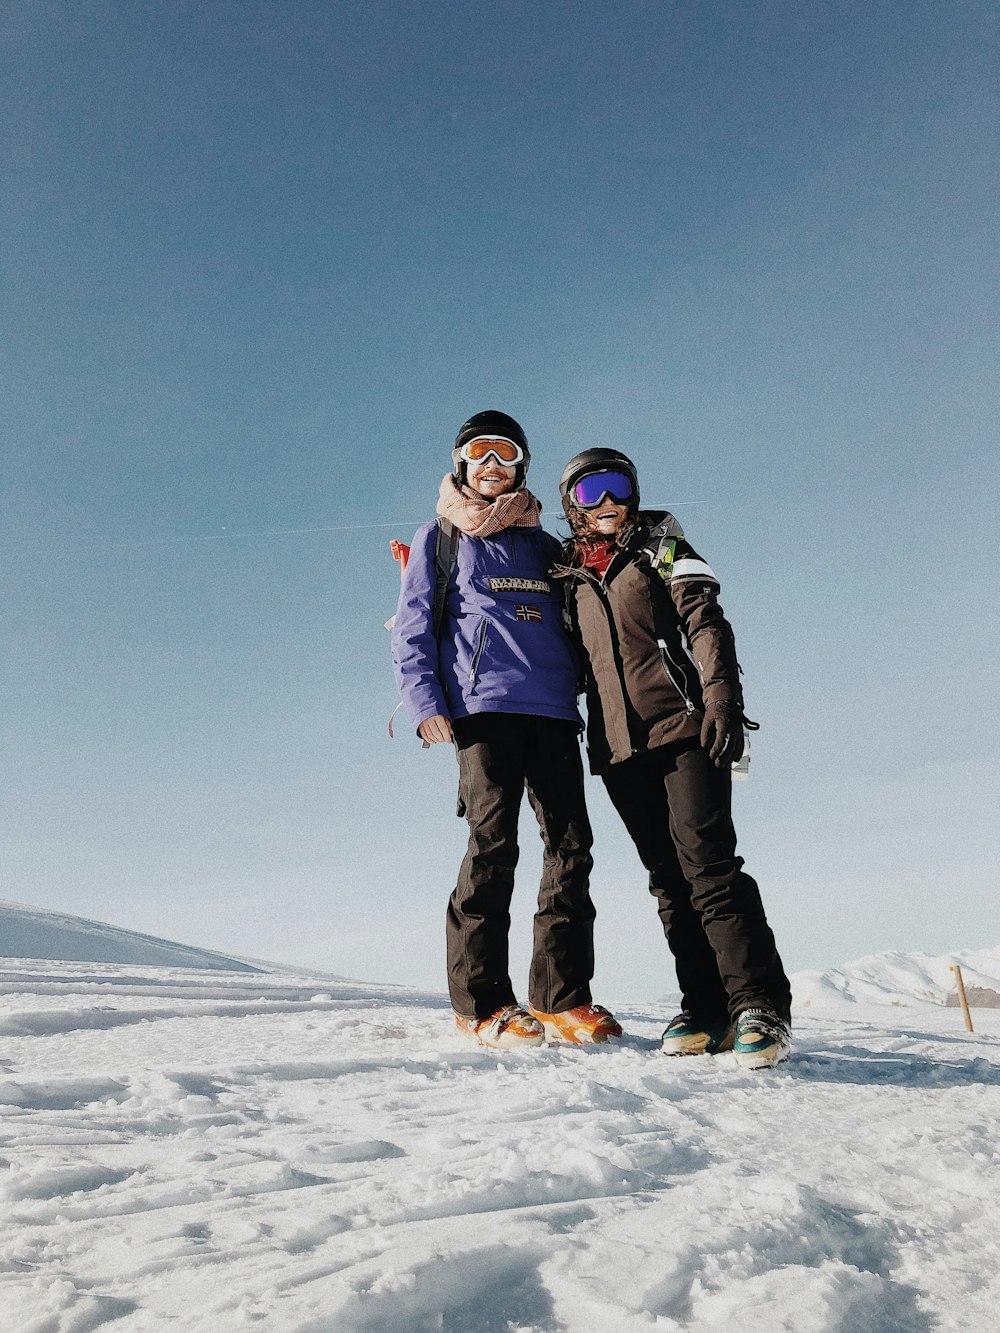 Mann und Frau stehen tagsüber auf schneebedecktem Boden unter blauem Himmel